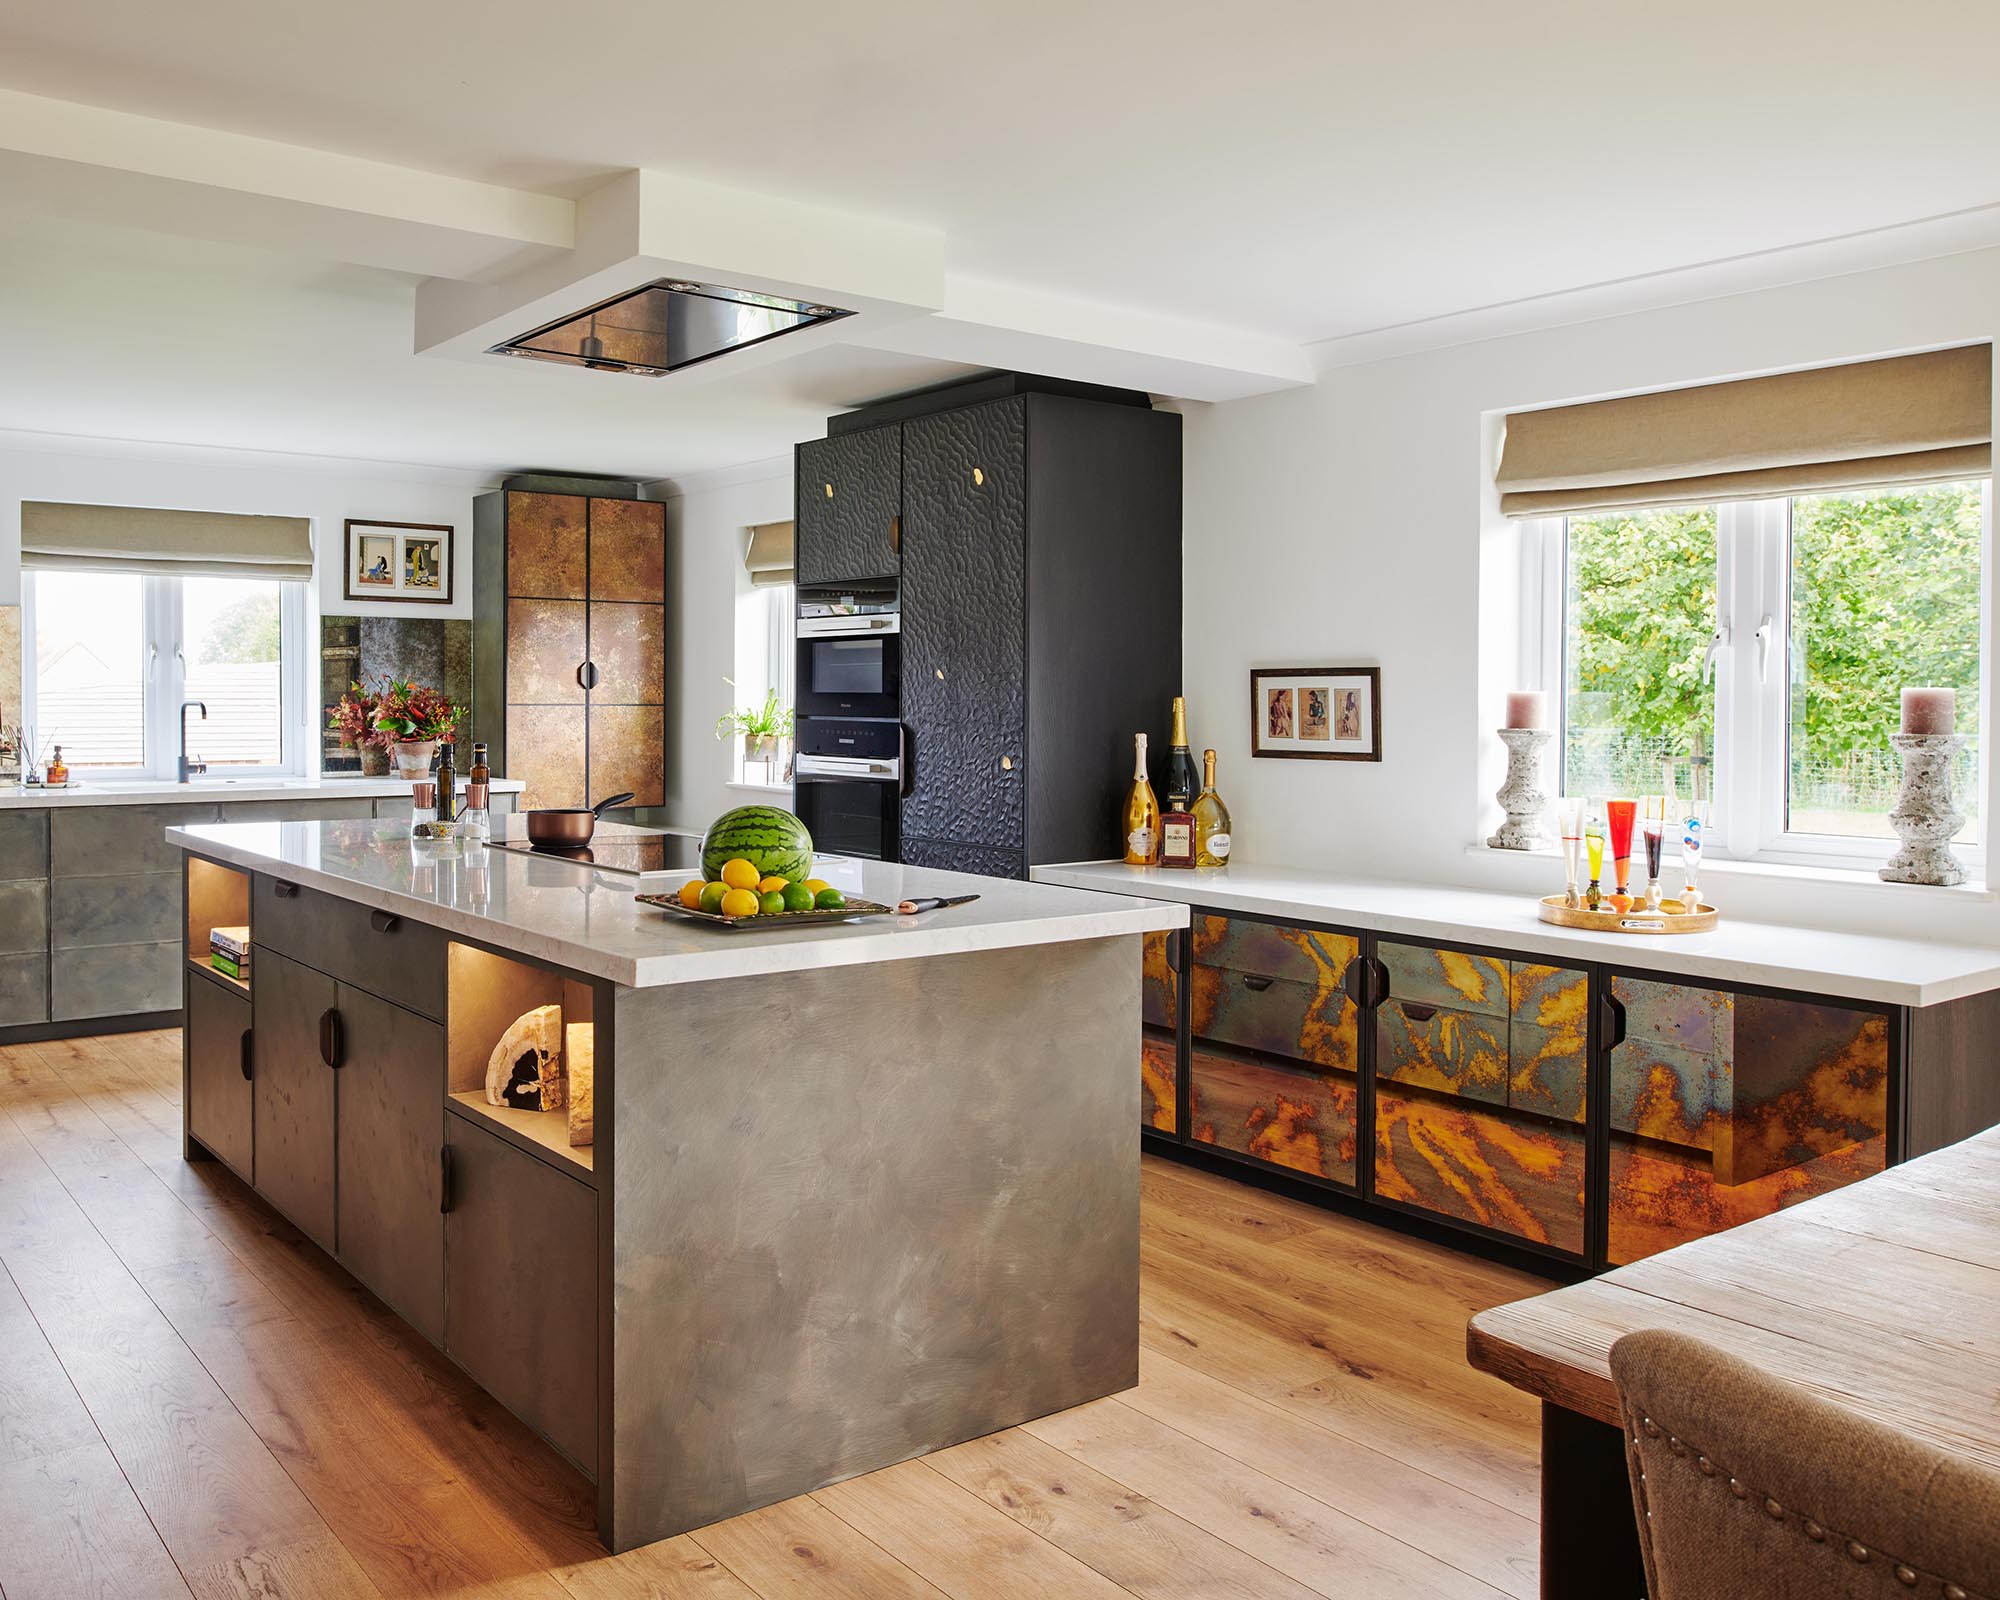 Wood Kitchen Flooring Is, Should Kitchen Be Tile Or Hardwood